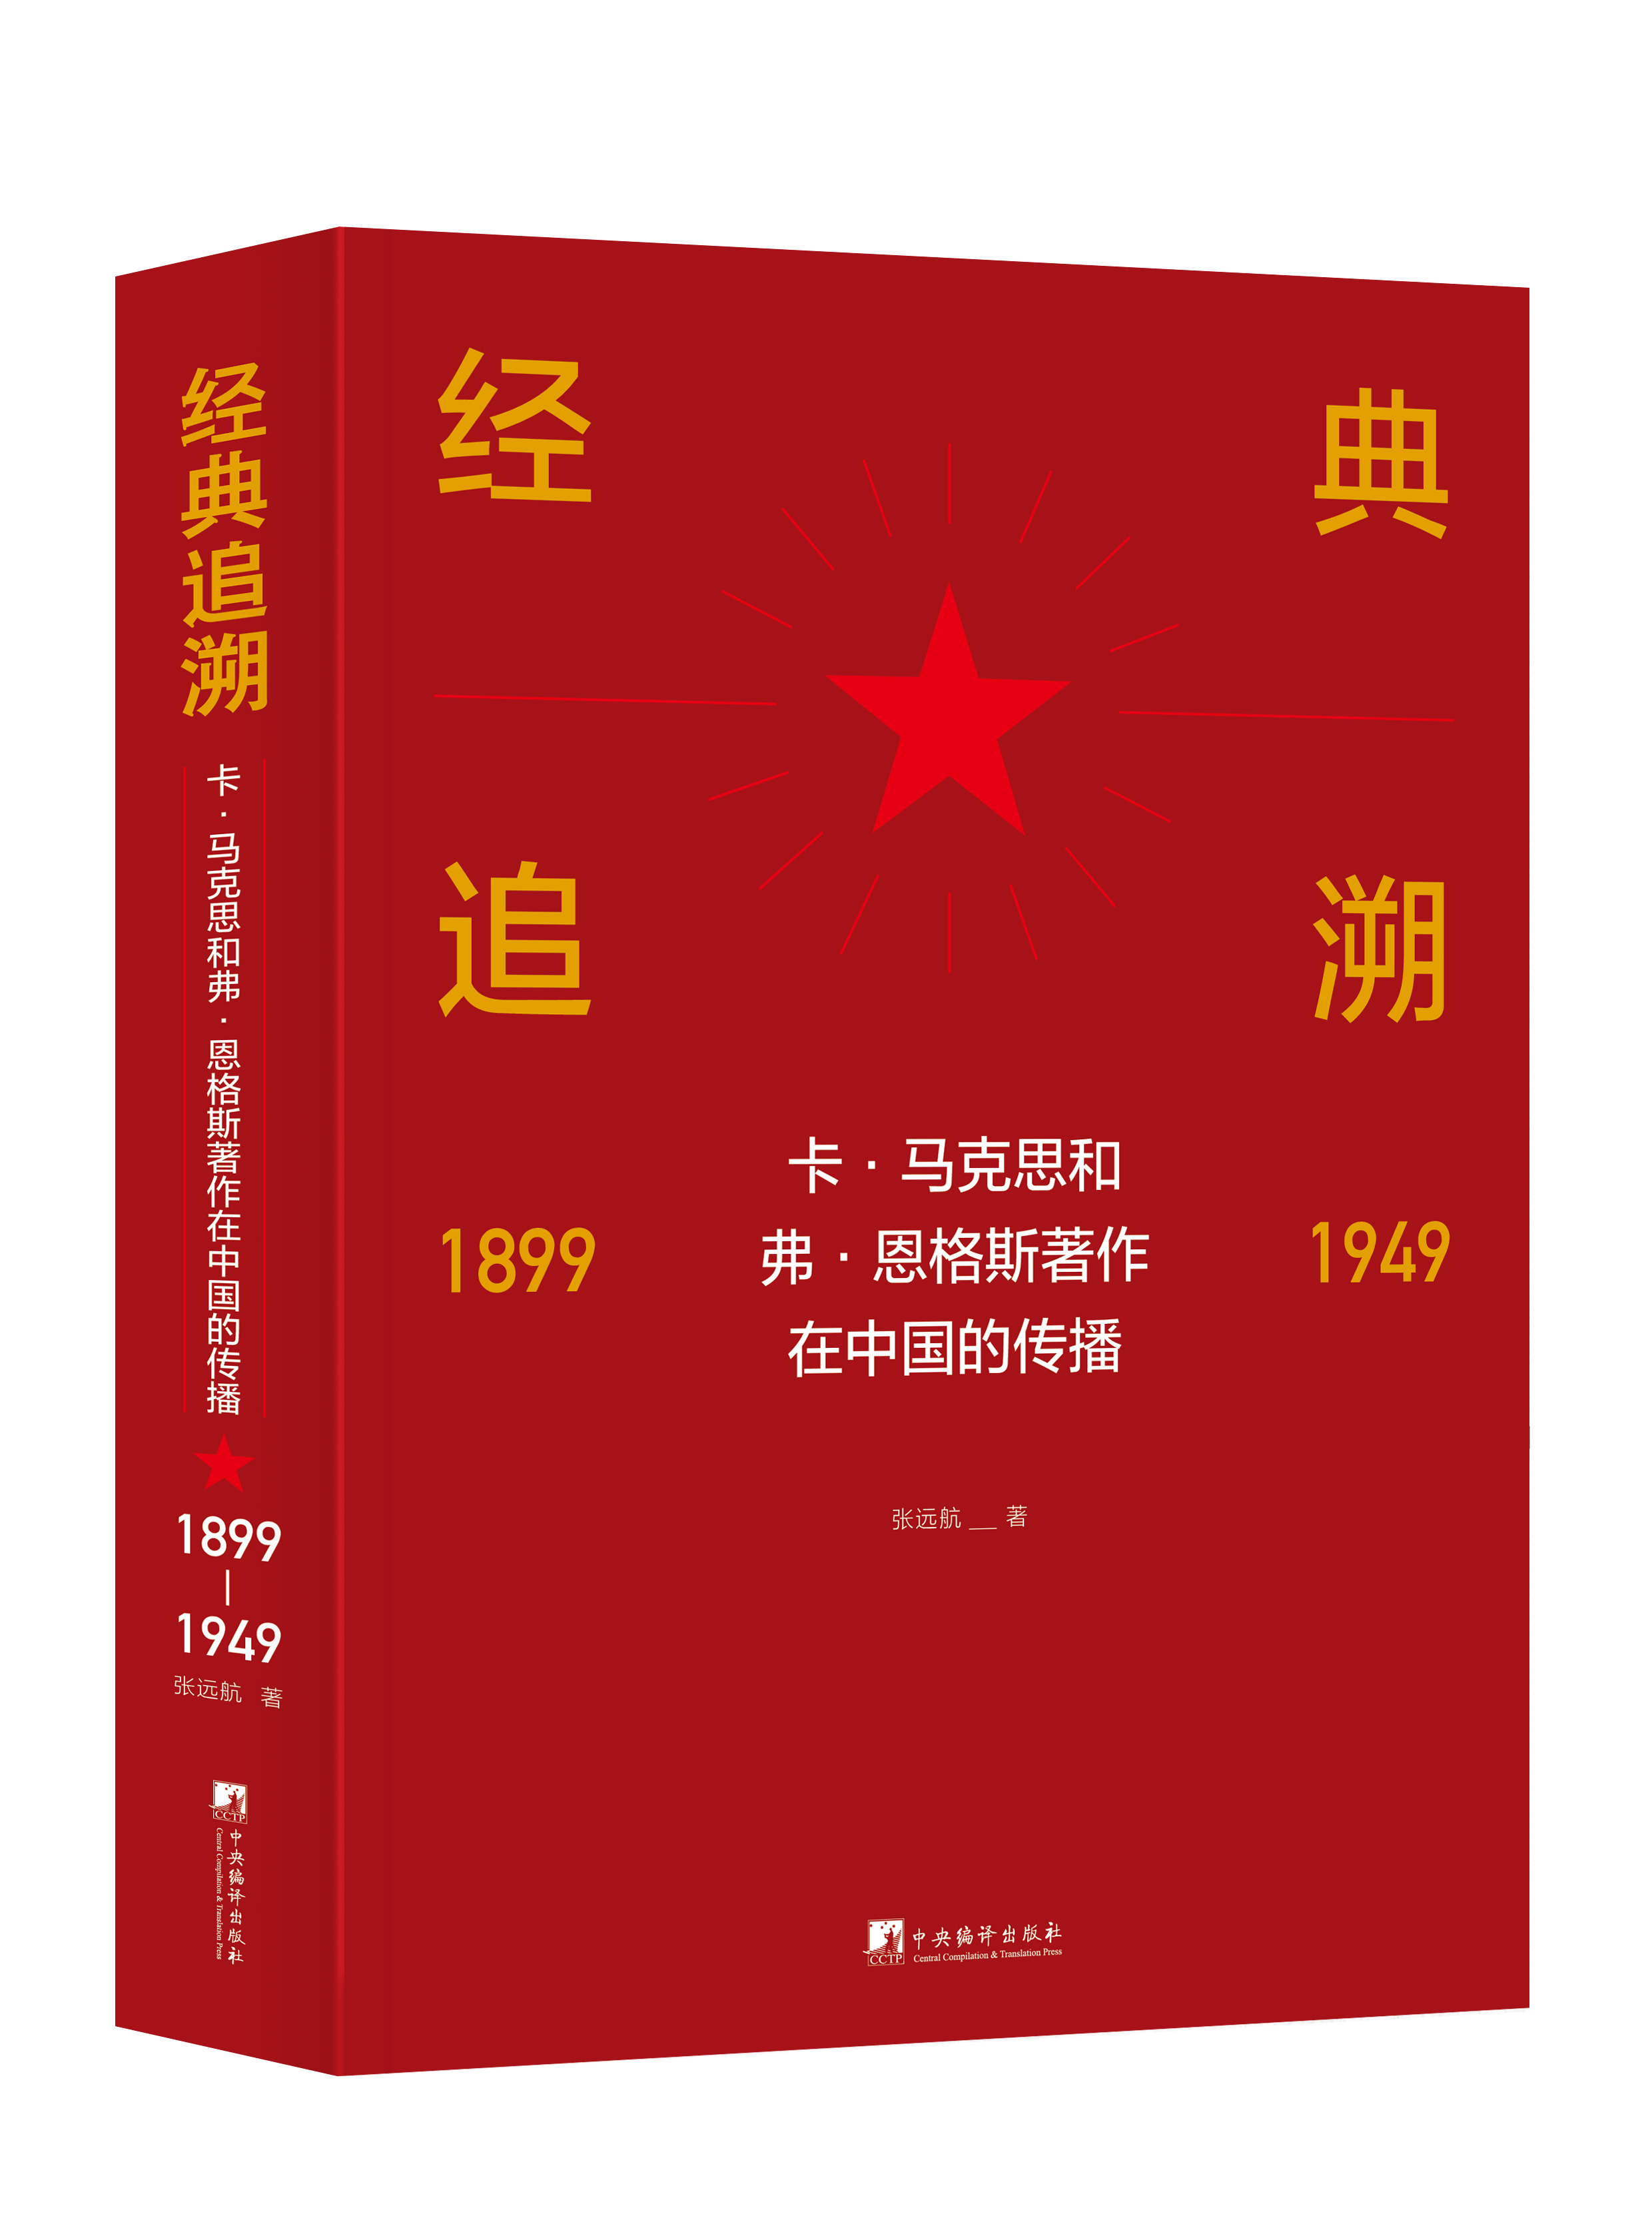 《经典追溯――卡・马克思和弗・恩格斯著作在中国的传播（1899-1949）》